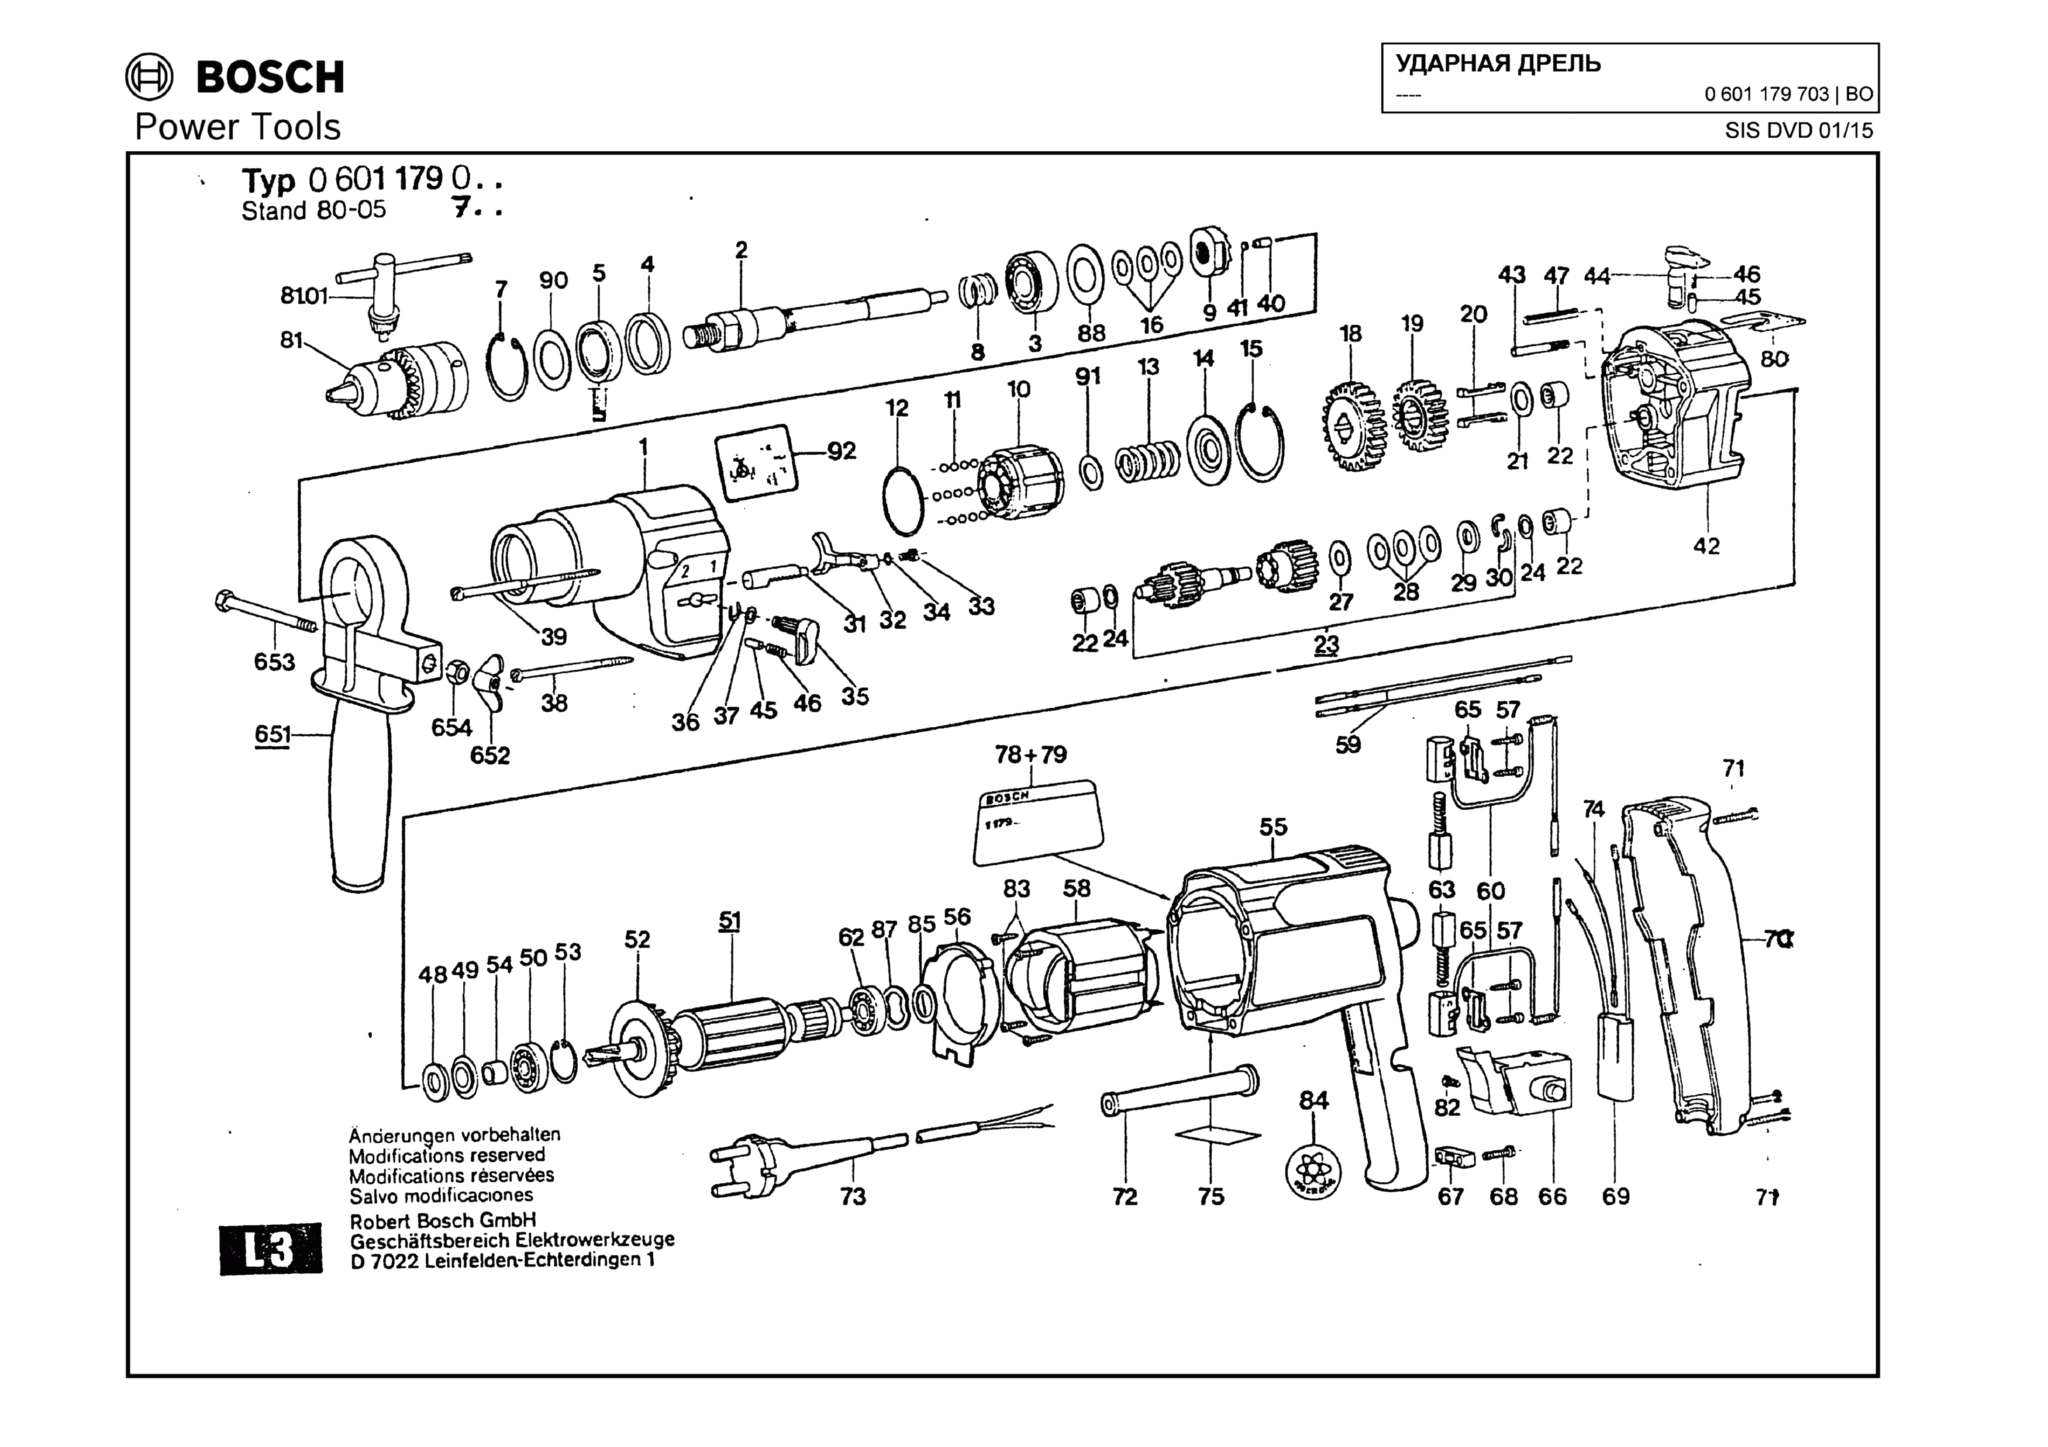 Запчасти, схема и деталировка Bosch (ТИП 0601179703)